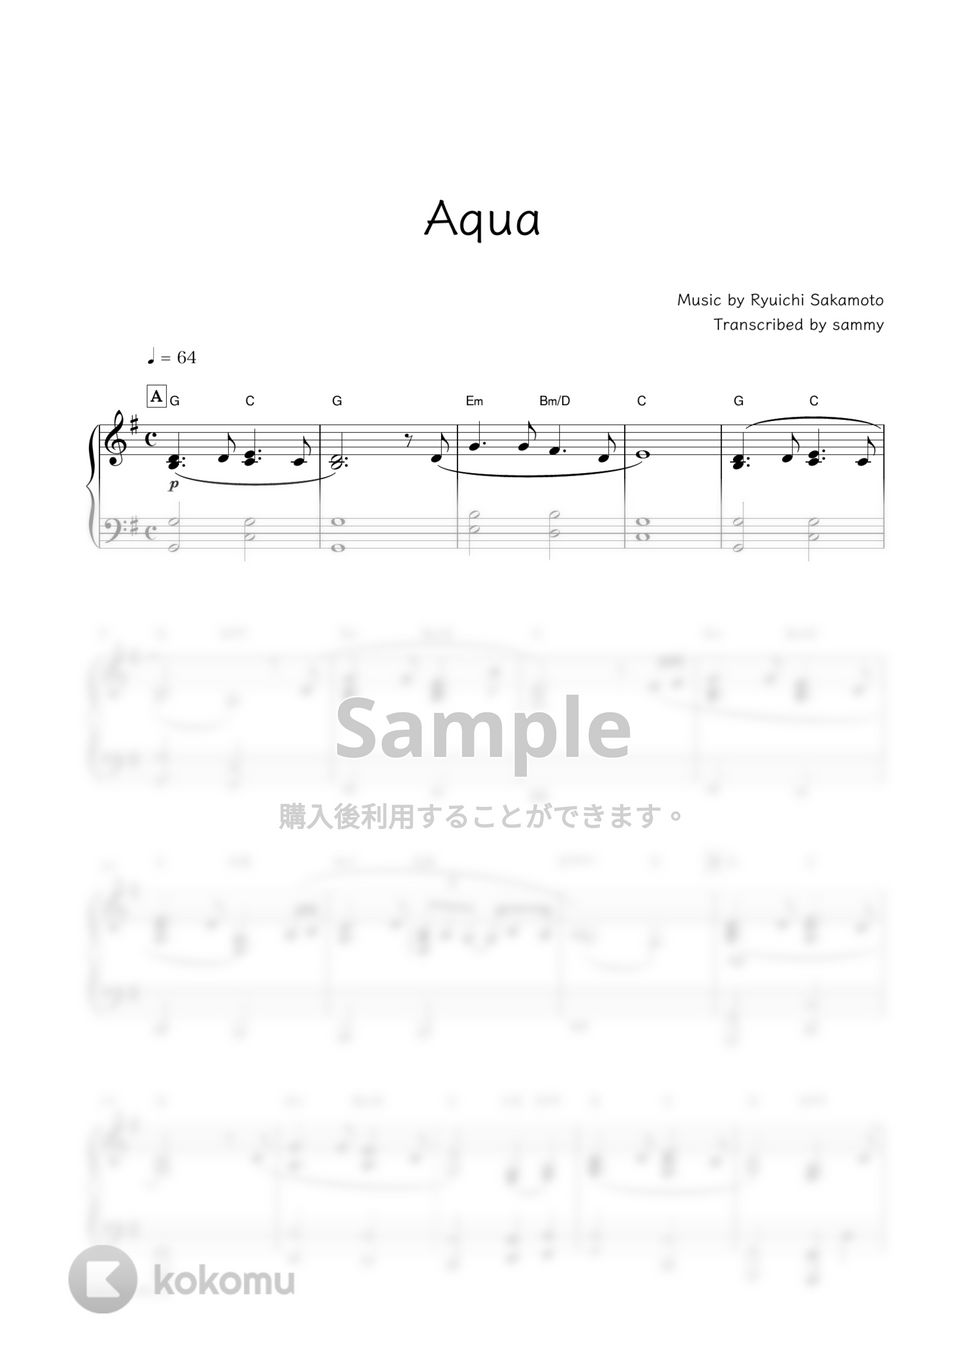 坂本龍一・映画『怪物』OST - Aqua by sammy